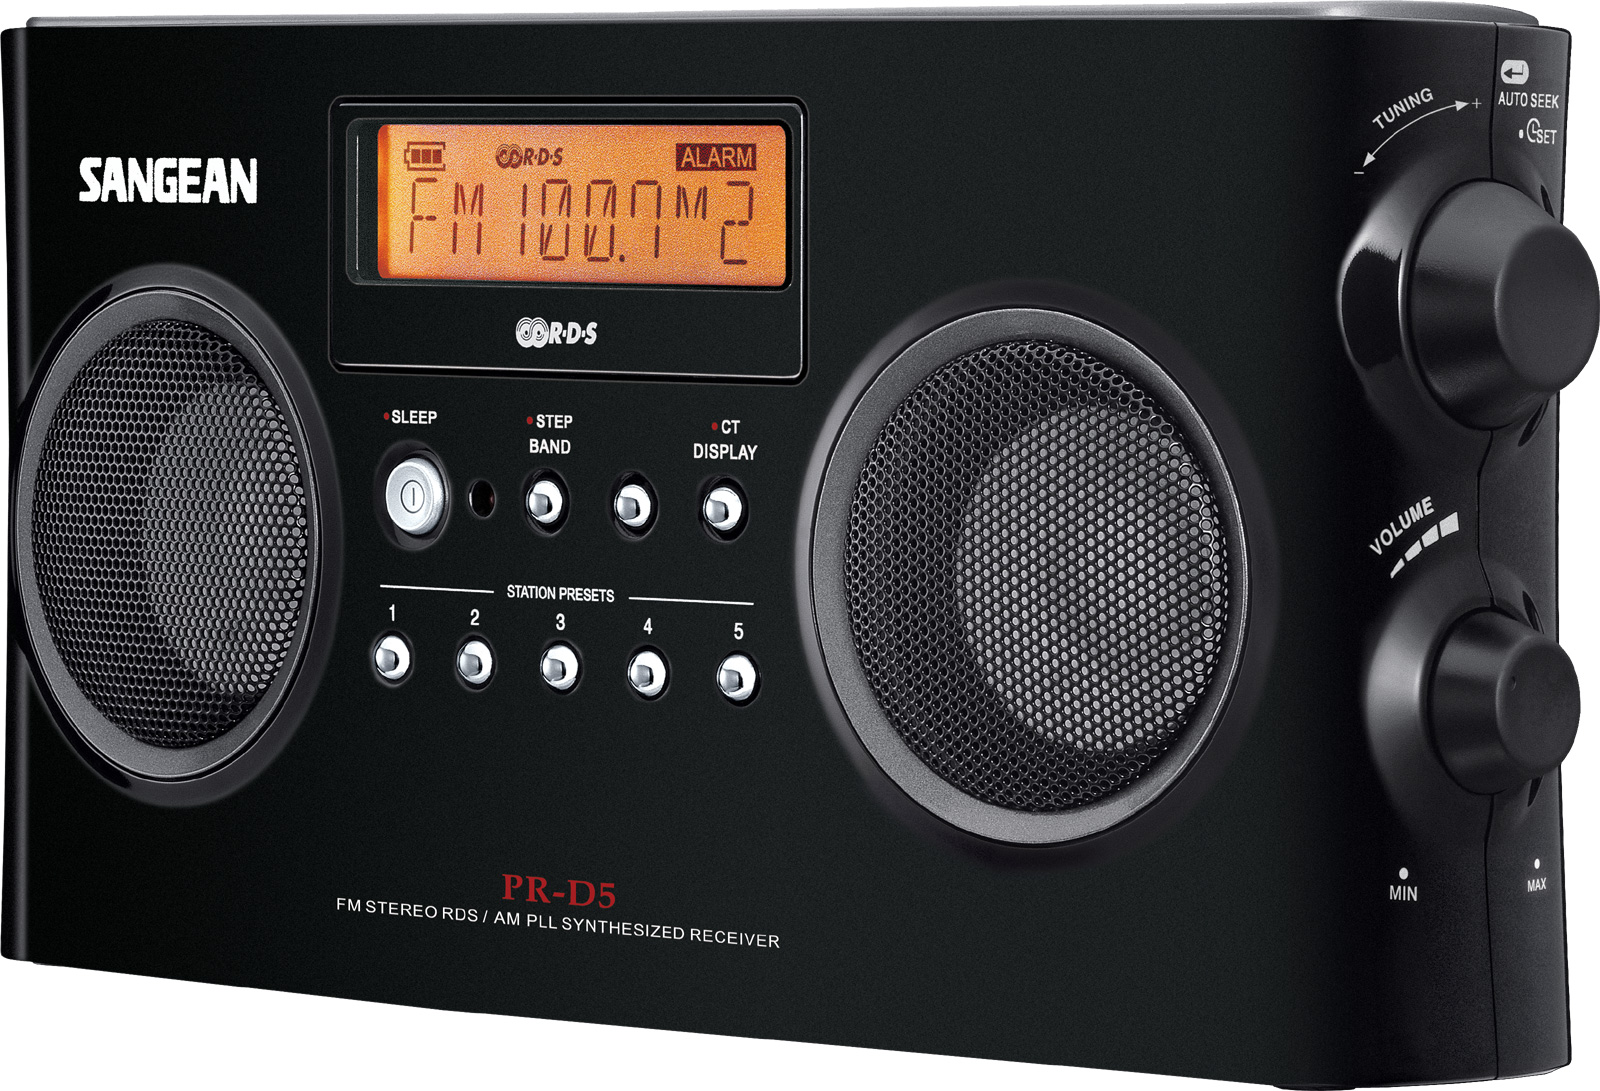 Radio portable AM / FM - Stéréo RBDS PR-D5